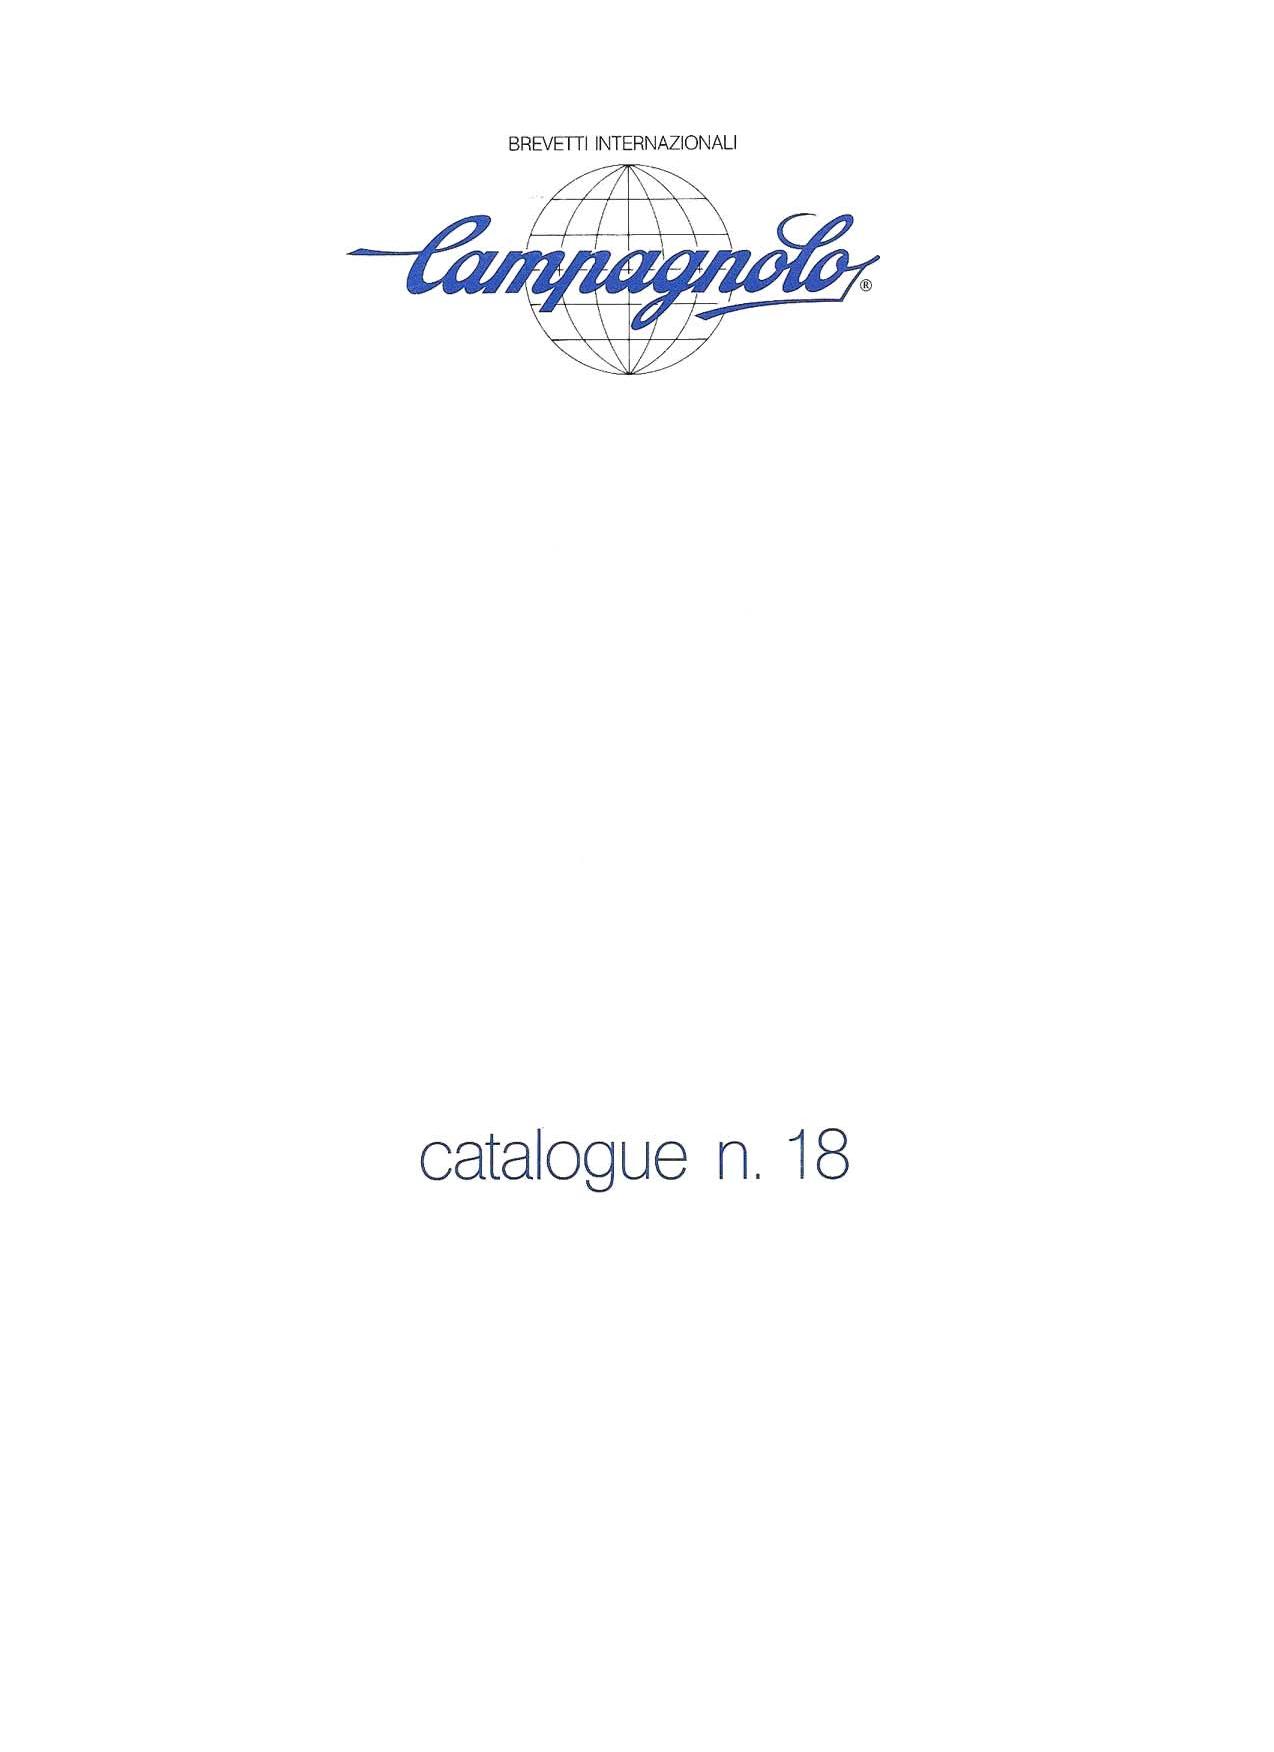 1984 Campagnolo Catalog 18 - Super Record